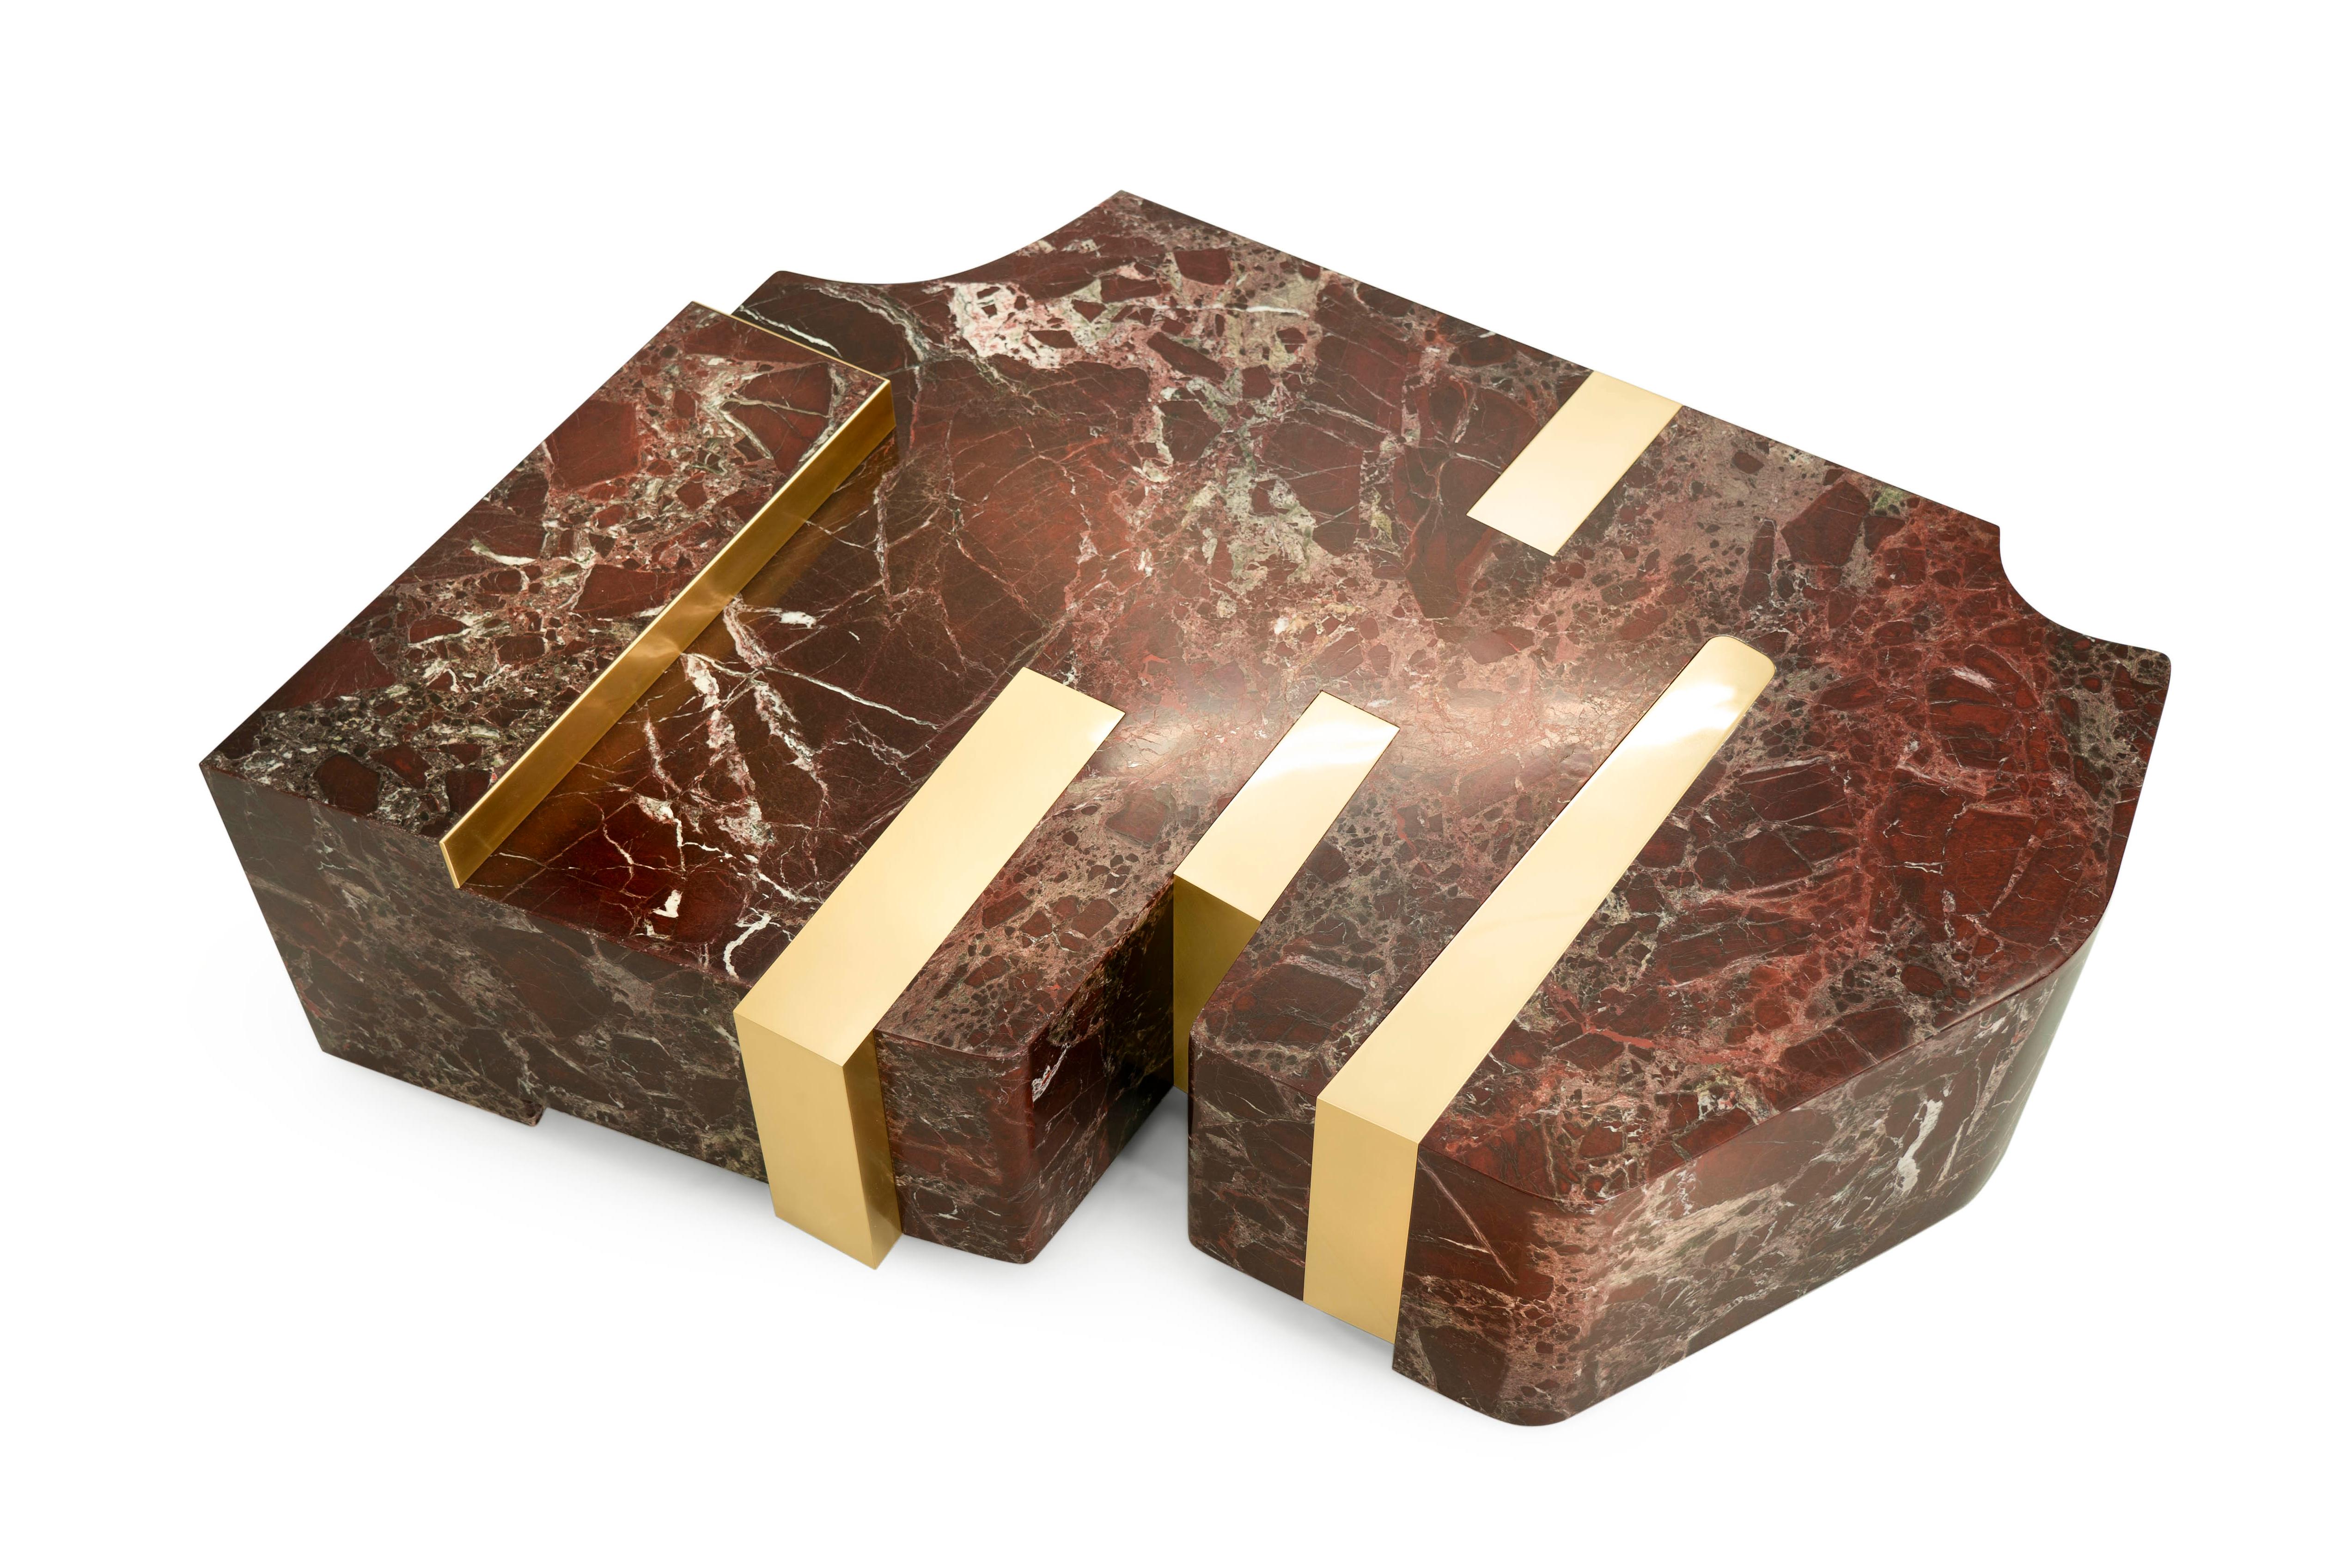 REY - Table basse de luxe du 21ème siècle en marbre rouge et laiton.

À vrai dire, la table REY porte le nom de notre nouveau et imprévu membre de l'équipe, un chien-loup tchécoslovaque nommé Reya. Le tempérament fougueux de Reya et ses élans